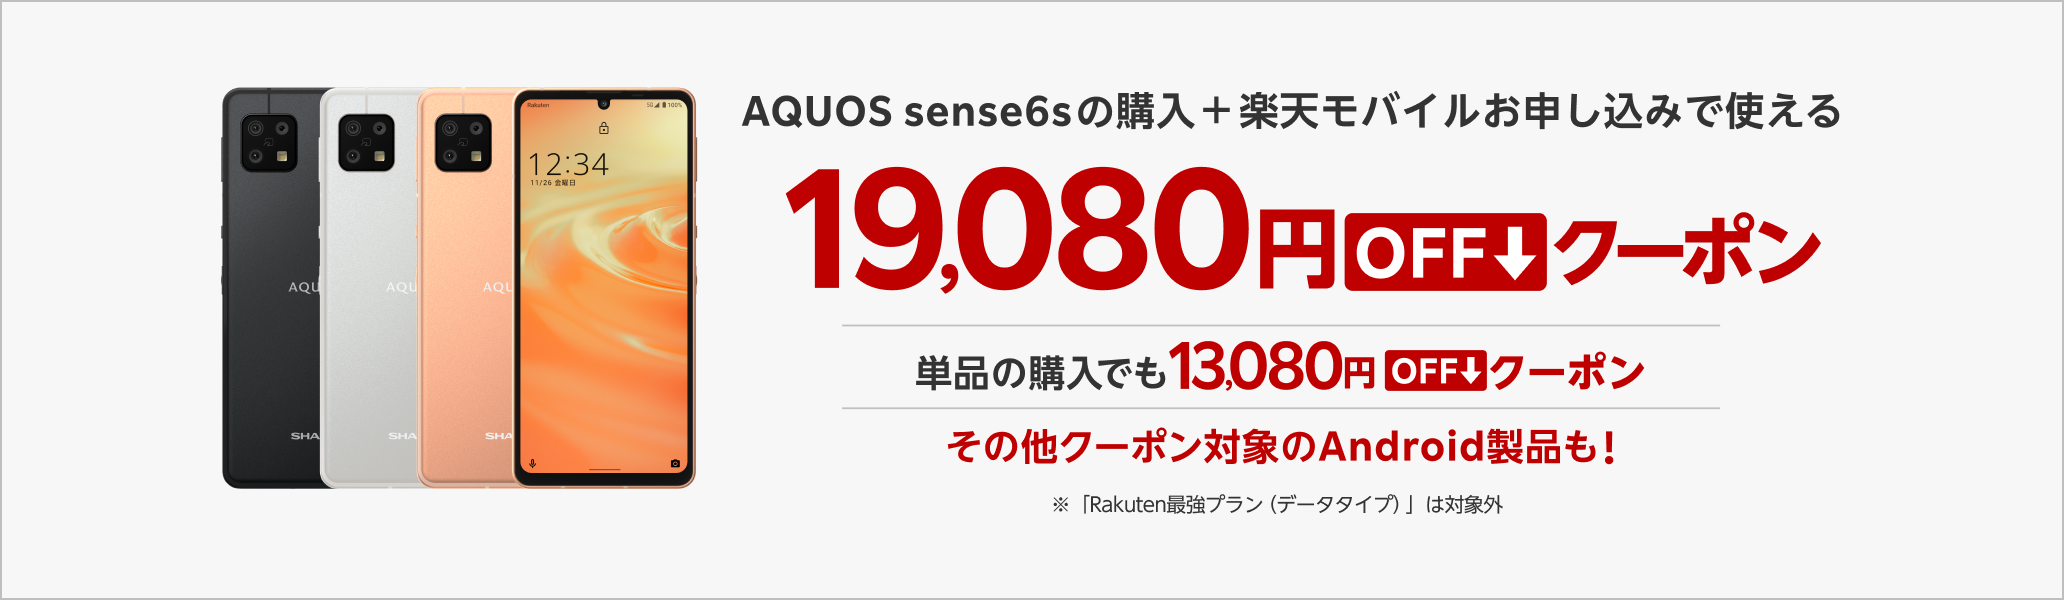 AQUOS sense6sの購入+楽天モバイルお申し込みで使える19,080円OFFクーポン　単品の購入でも13,080円OFFクーポン　その他クーポン対象のAndroid製品も！　※対象プラン等条件あり